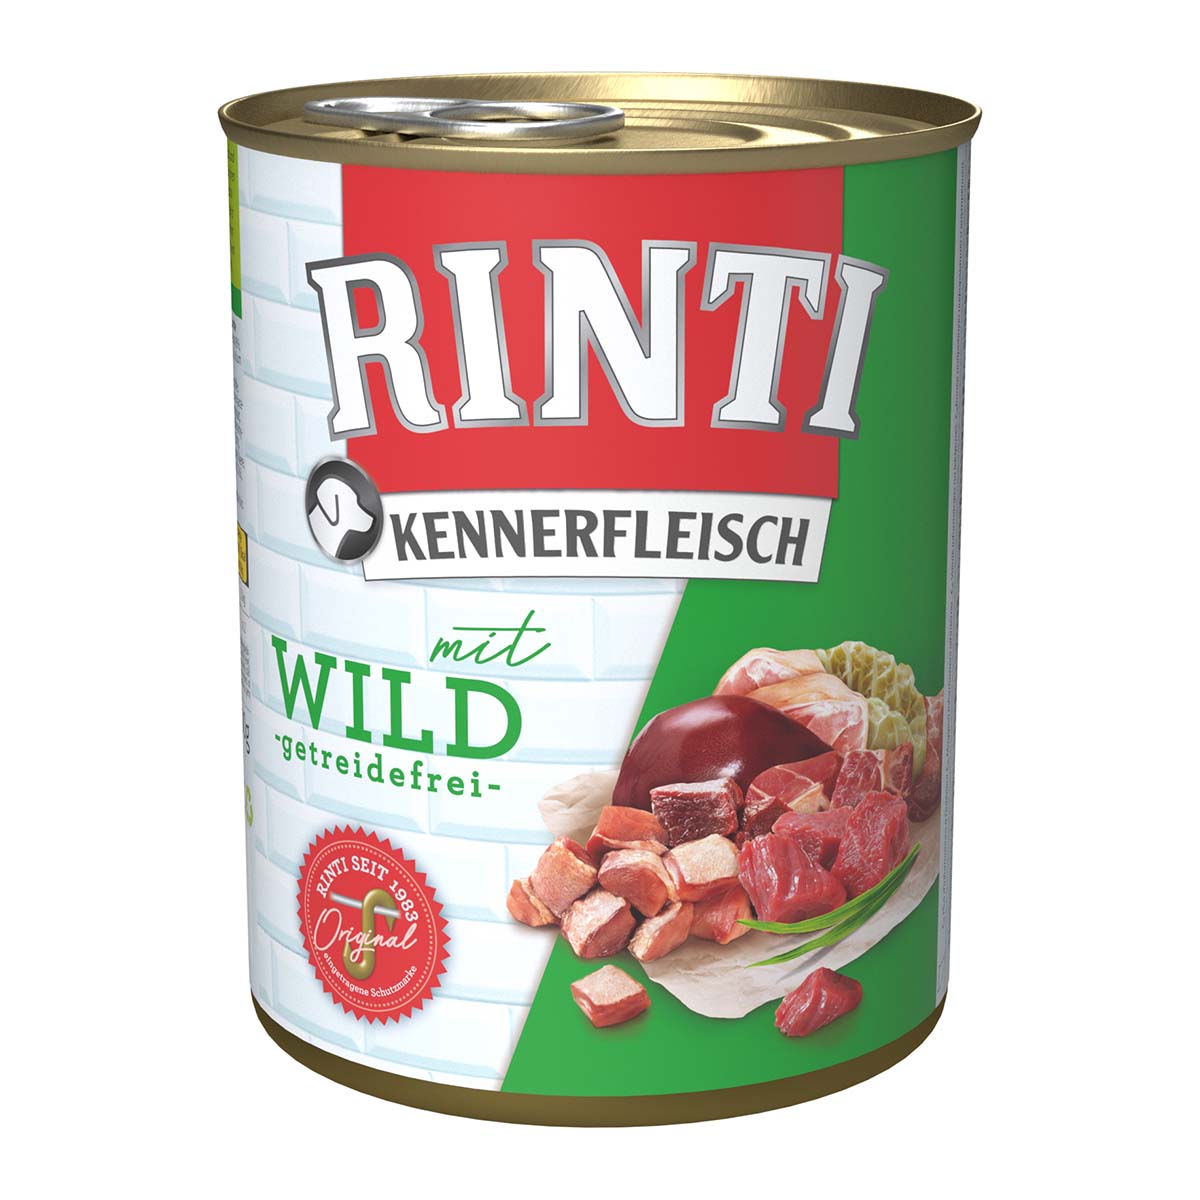 Rinti Kennerfleisch mit Wild 12x800g